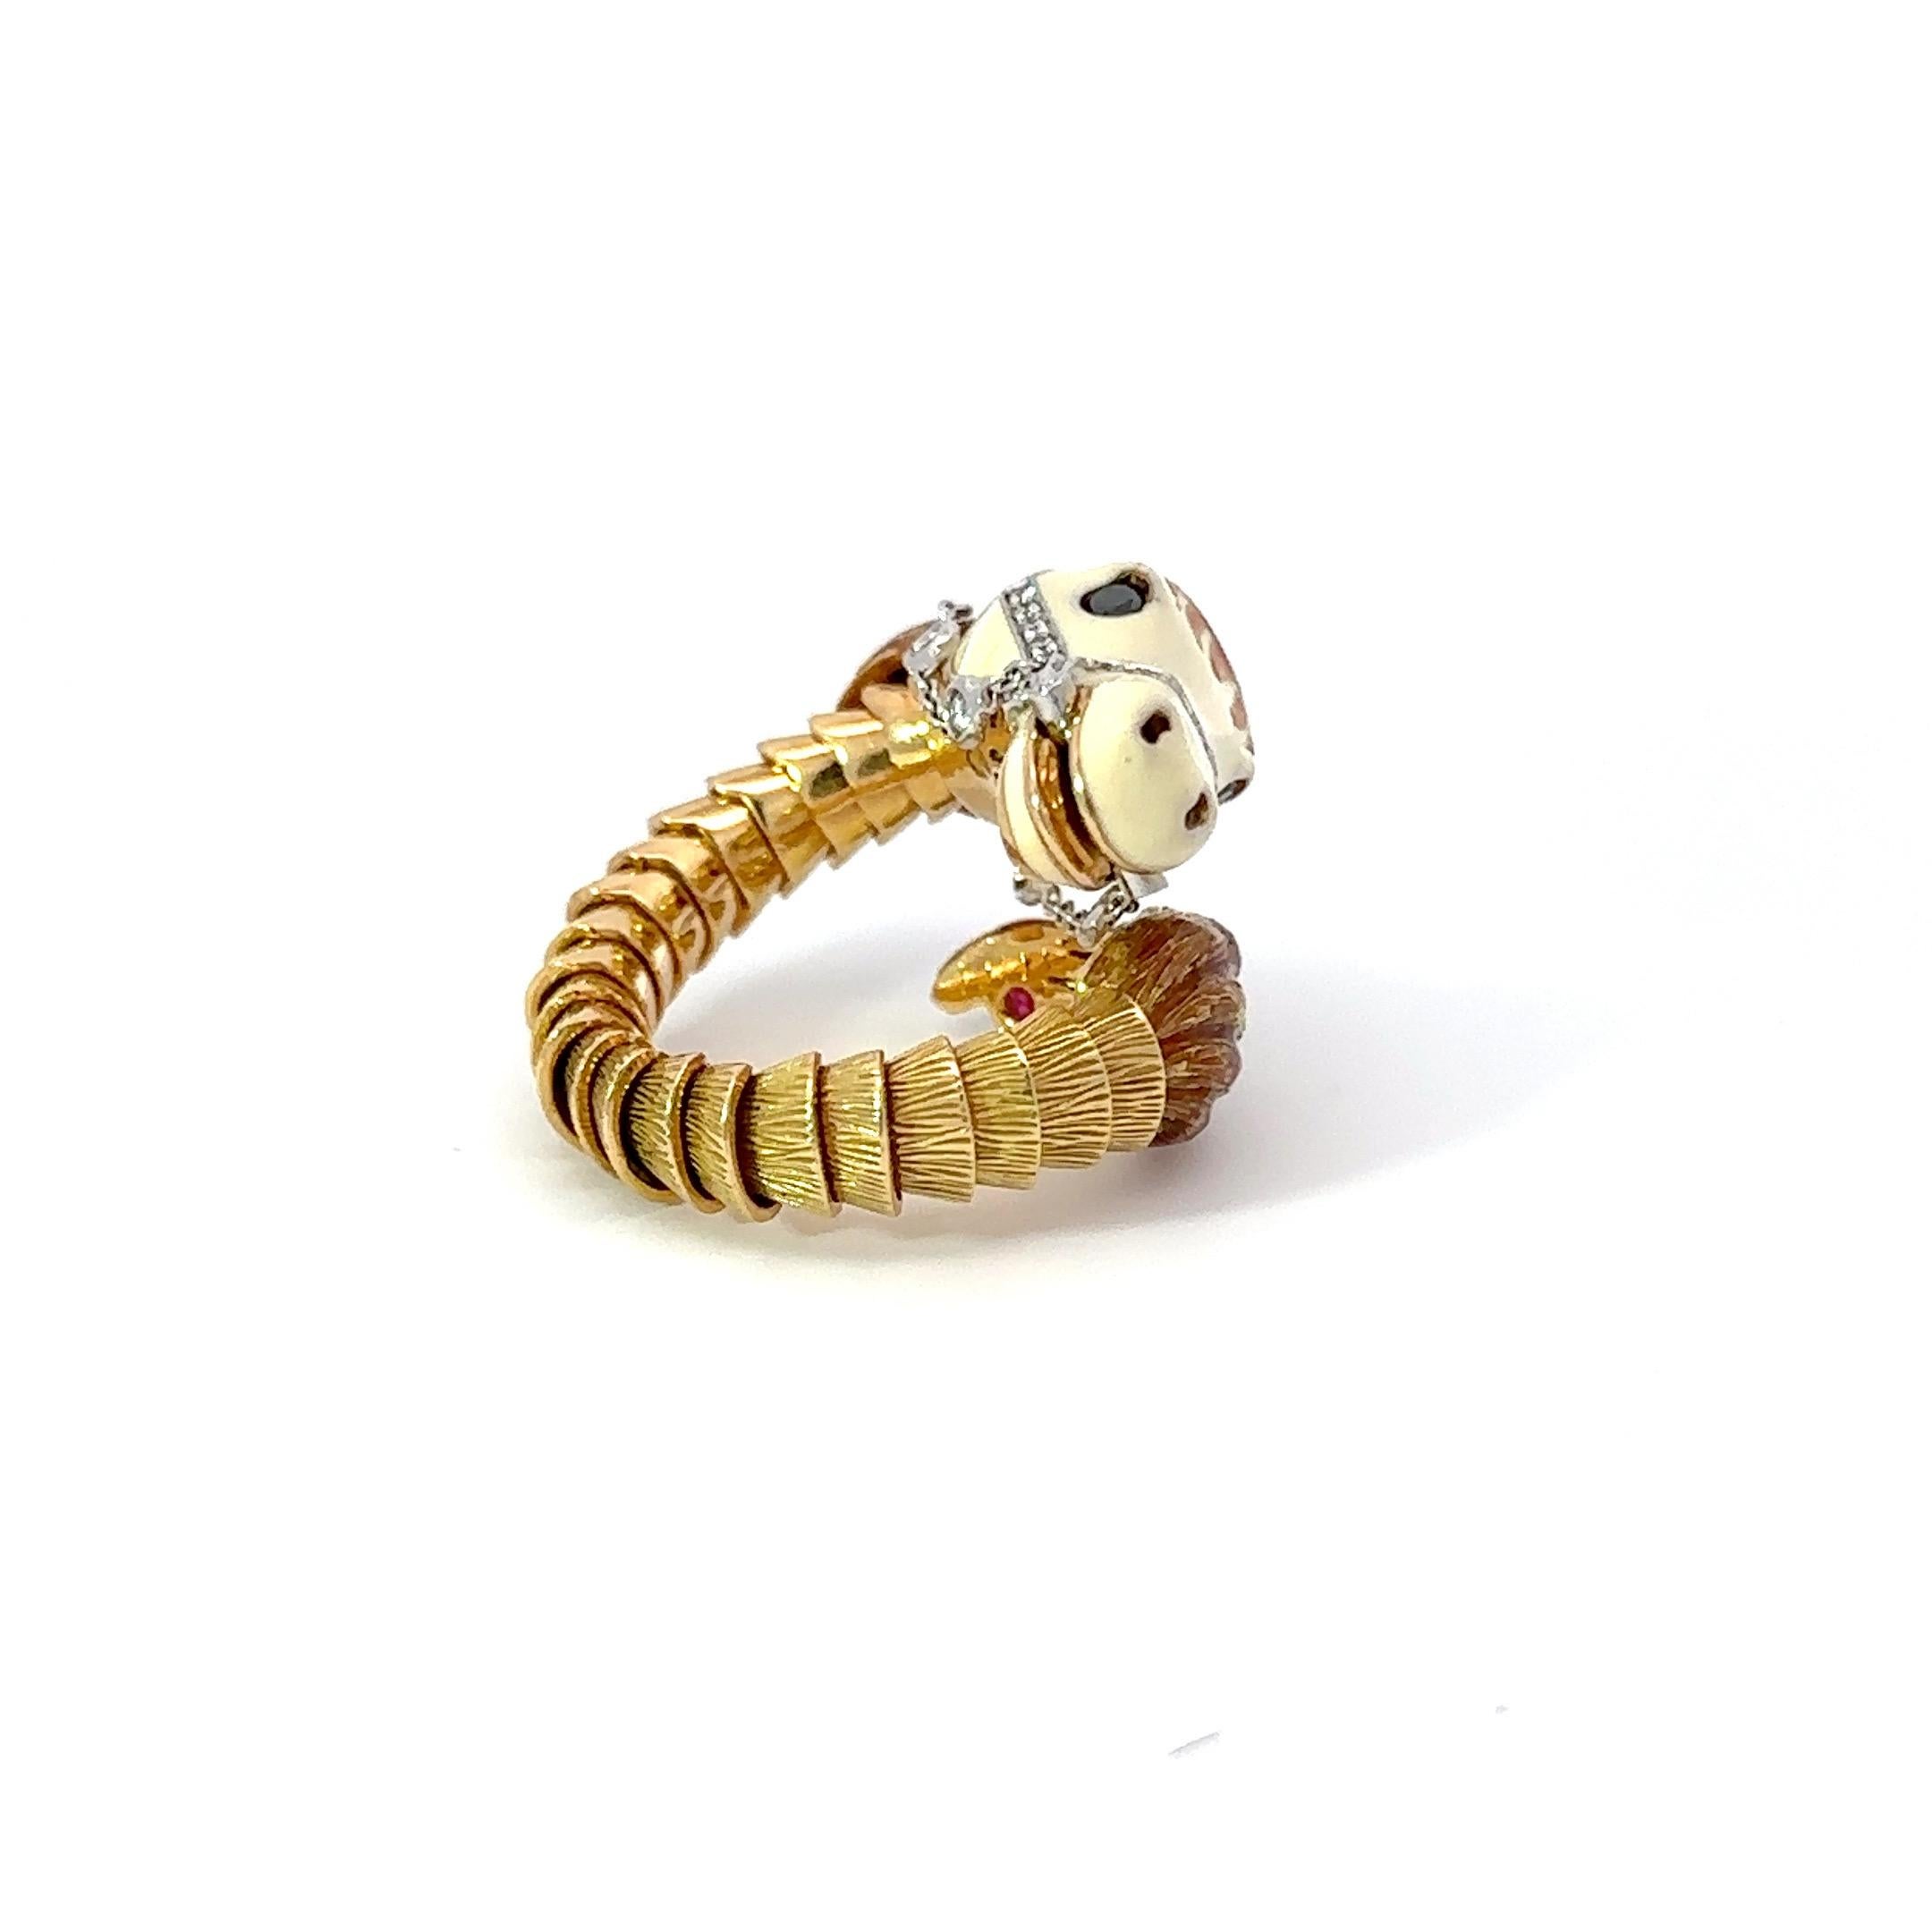 Dies ist ein wunderschöner Roberto Coin White Emaille & Diamant 18K Rose Gold Ring. Das Gebiss aus Weißgold und die Zügel sind mit runden Diamanten im Brillantschliff besetzt.
Perle in Geschirr und Lünette in Diamanten gefasst liegen zart in der